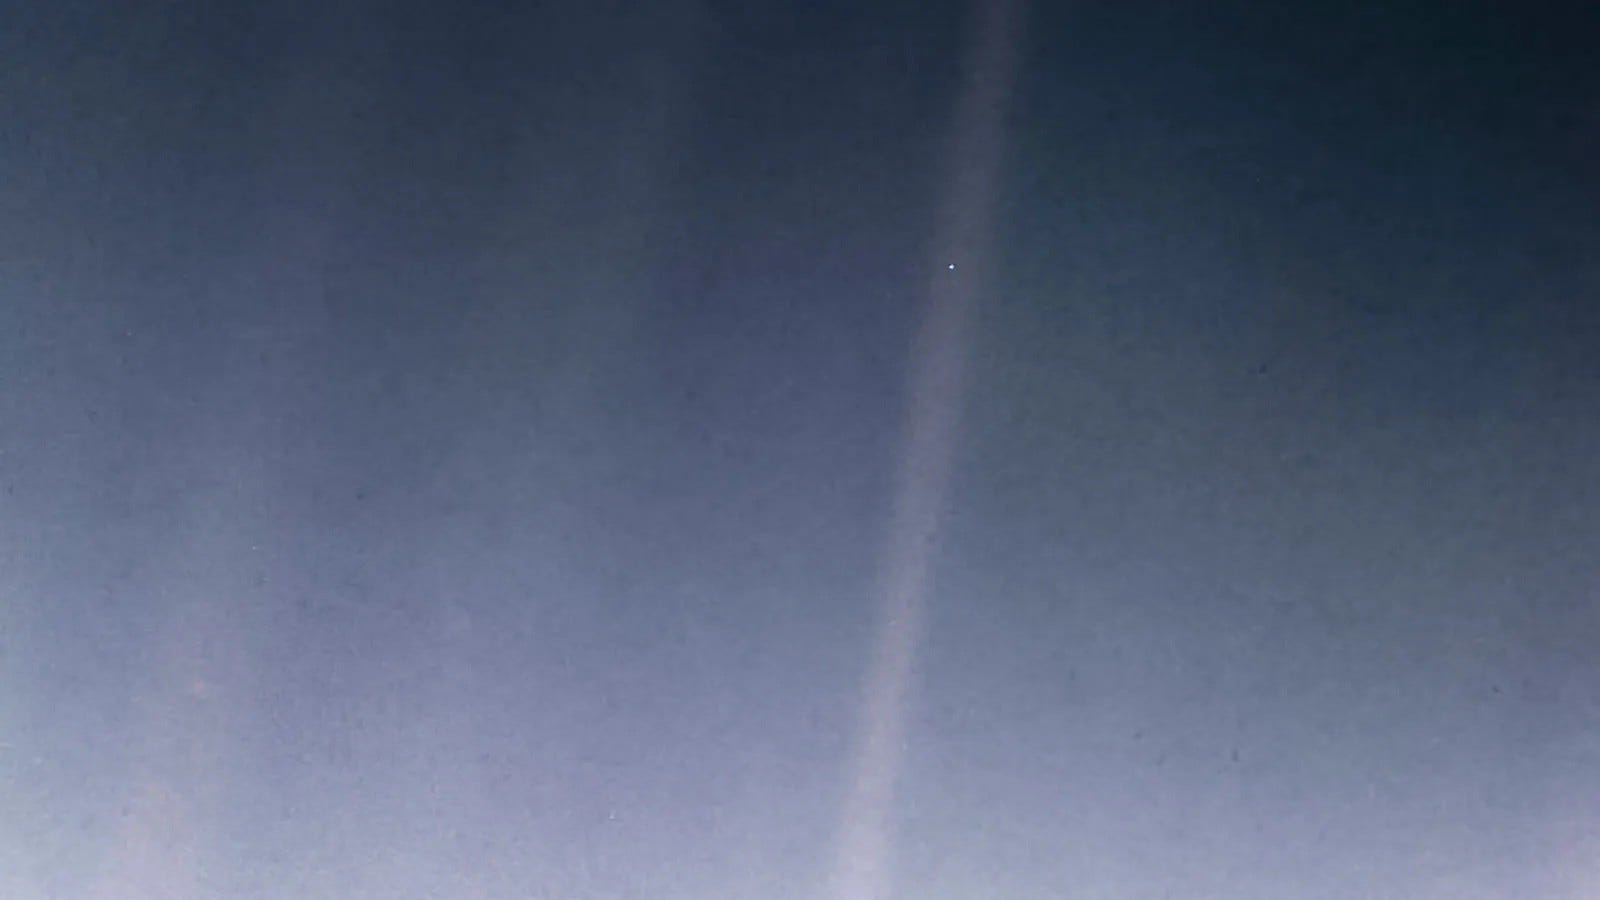 Foto der Erde als blassblauer Punkt, aufgenommen aus Milliarden Kilometern Entfernung im Weltraum